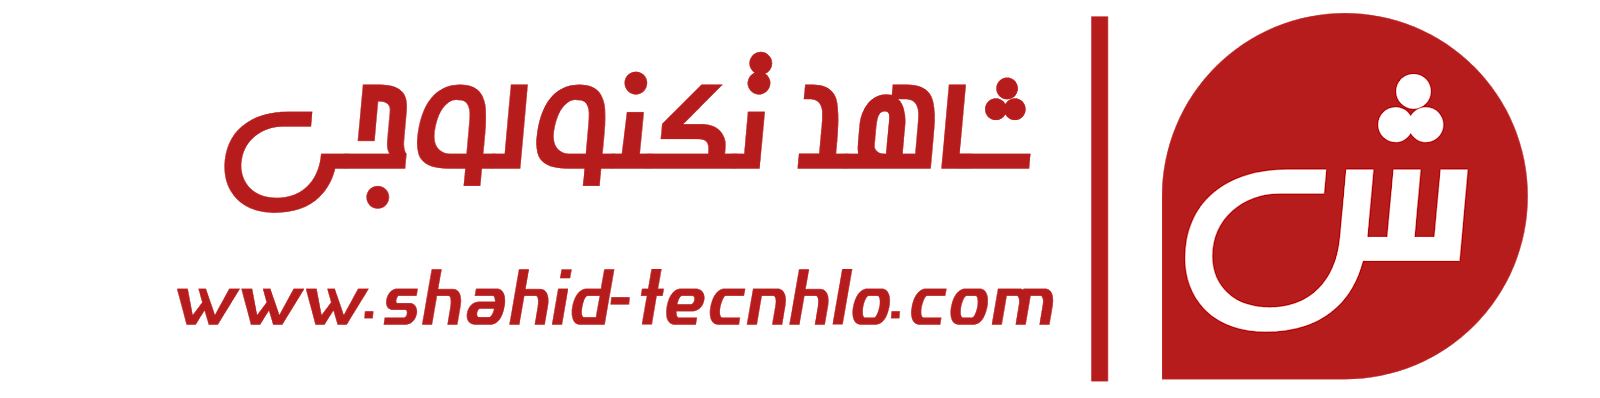 شاهد تكنولوجي | Shahid Technology